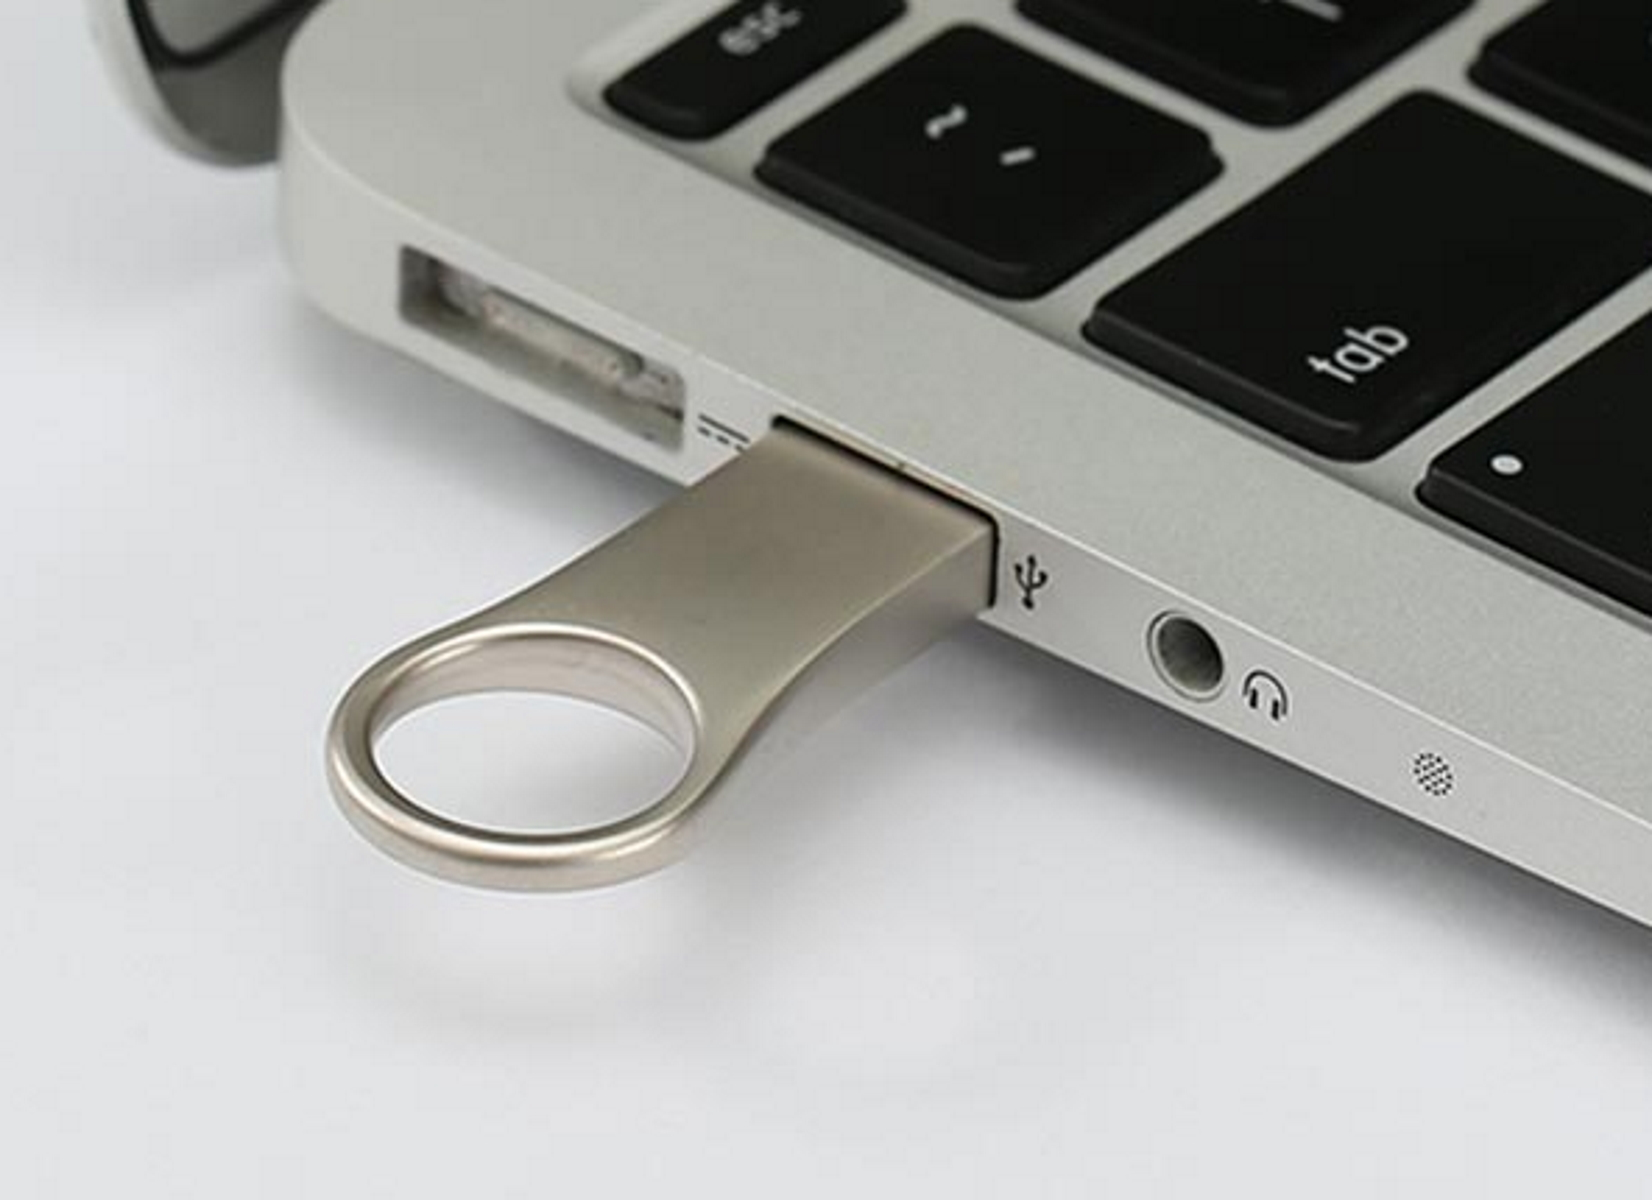 USB GERMANY ® Metall U66 8 (Gold, GB) USB-Stick